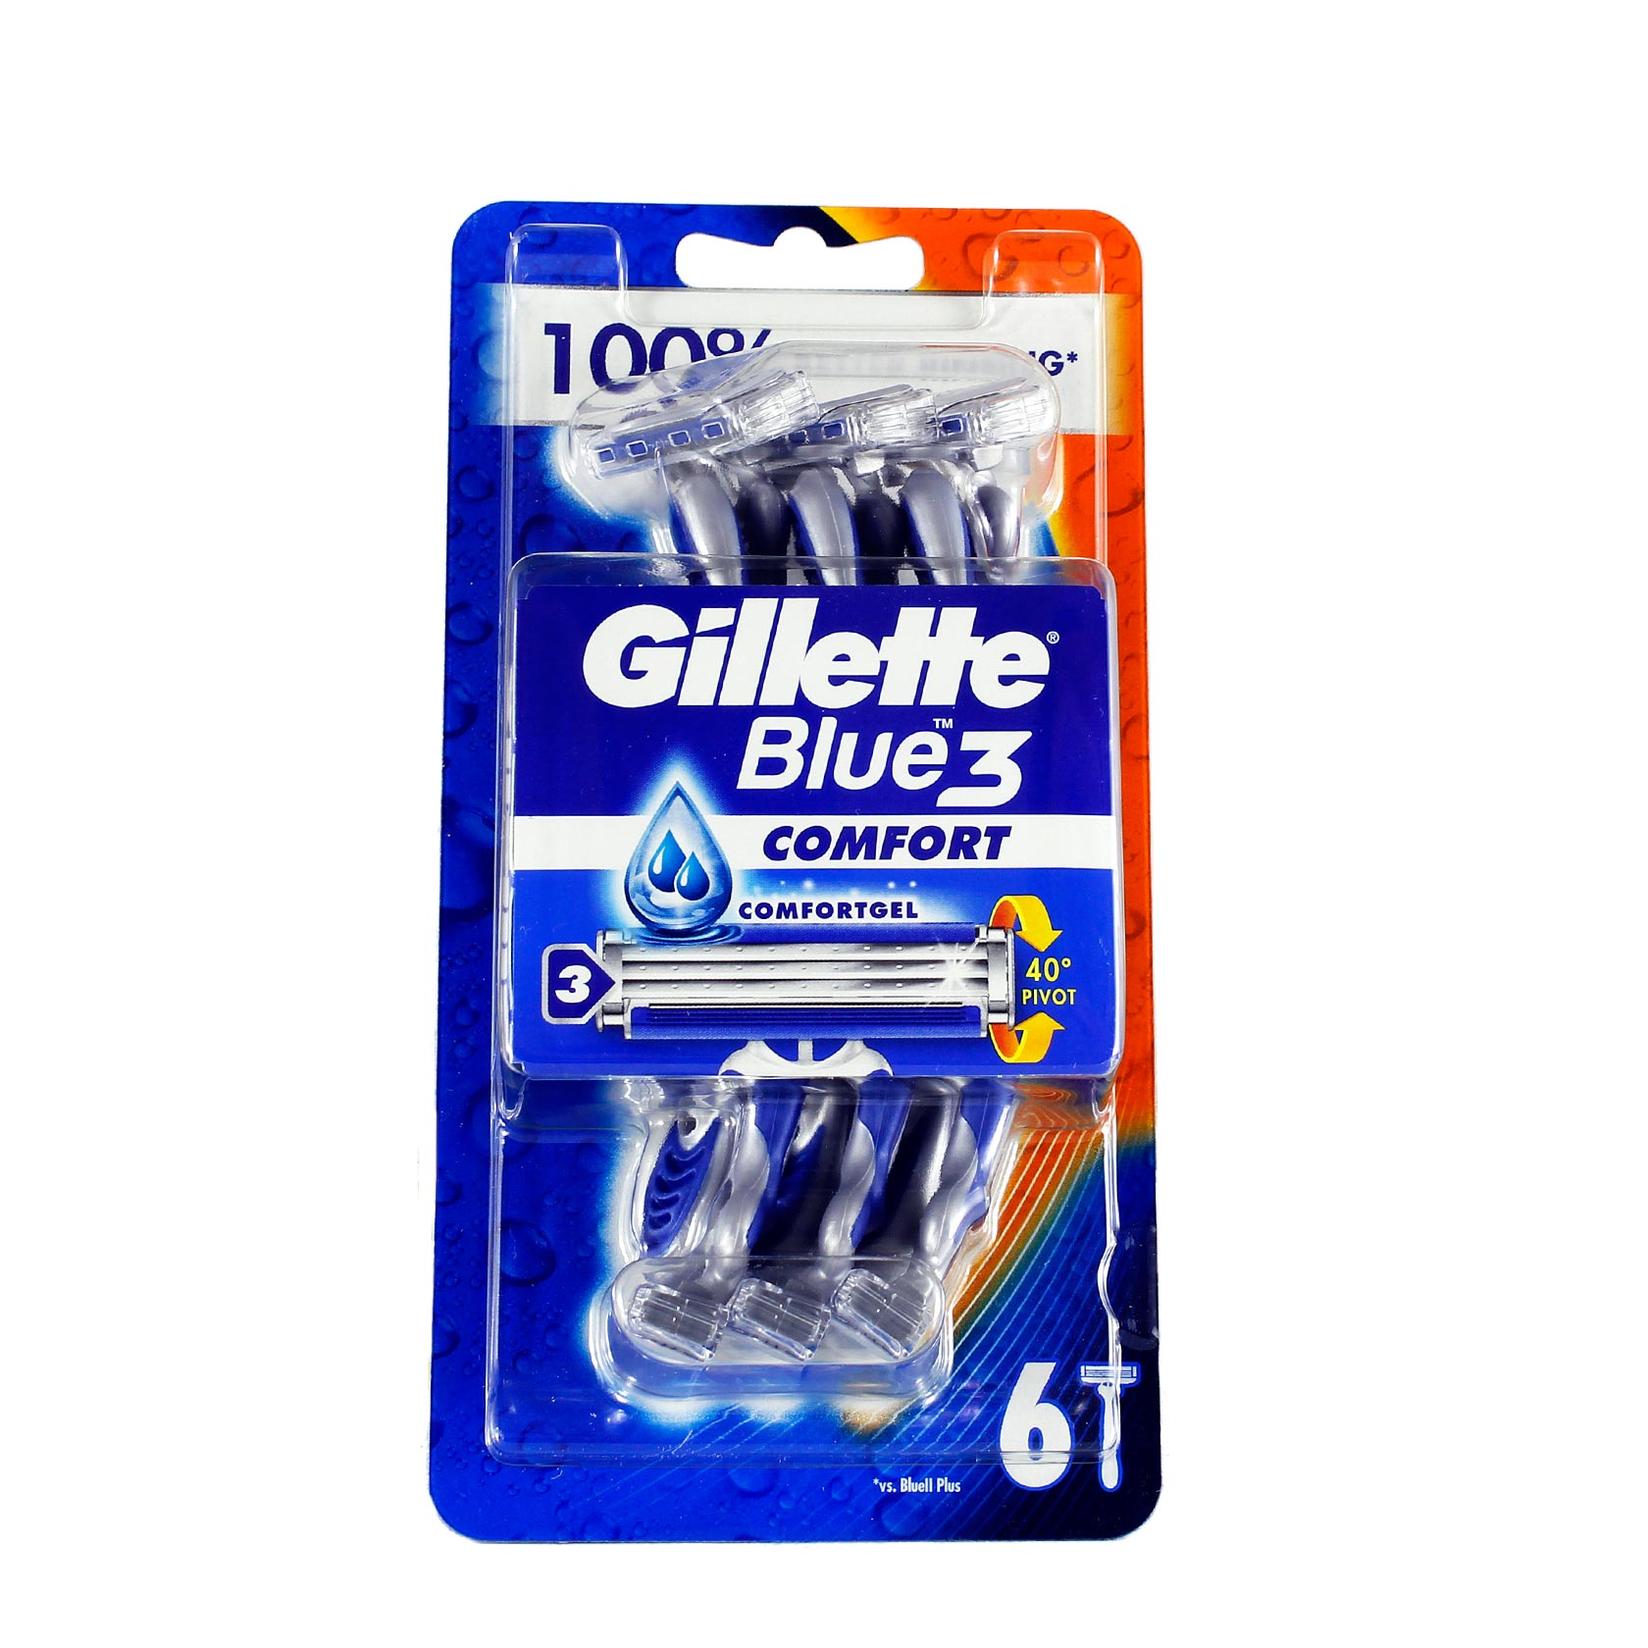 Selected image for GILLETTE Blue 3 Comfort Jednokratni brijač 6 komada